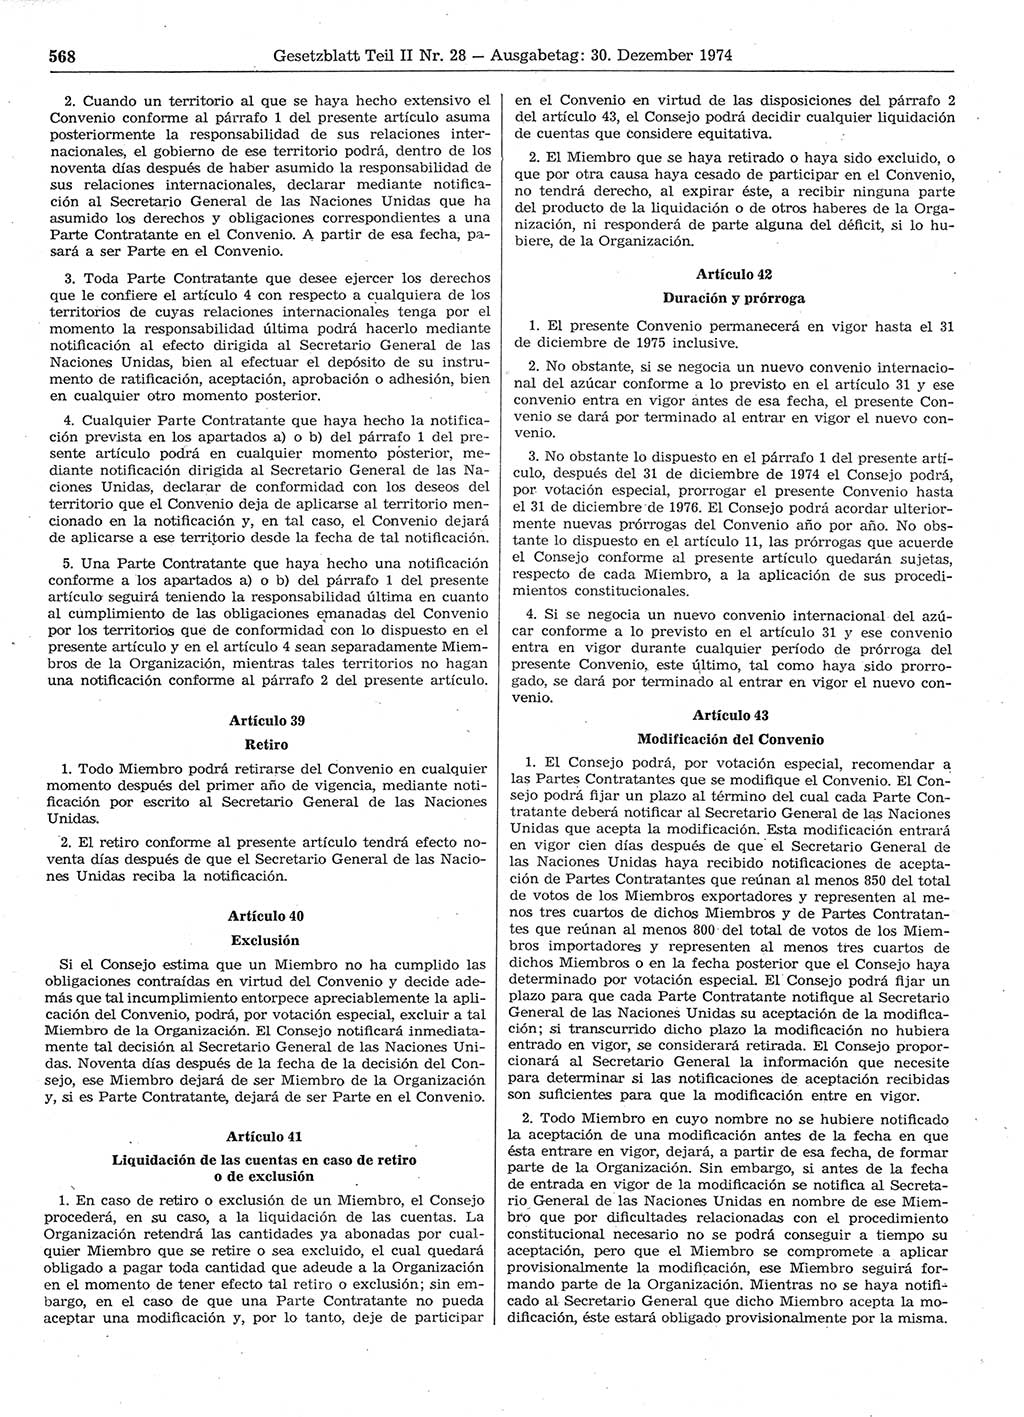 Gesetzblatt (GBl.) der Deutschen Demokratischen Republik (DDR) Teil ⅠⅠ 1974, Seite 568 (GBl. DDR ⅠⅠ 1974, S. 568)